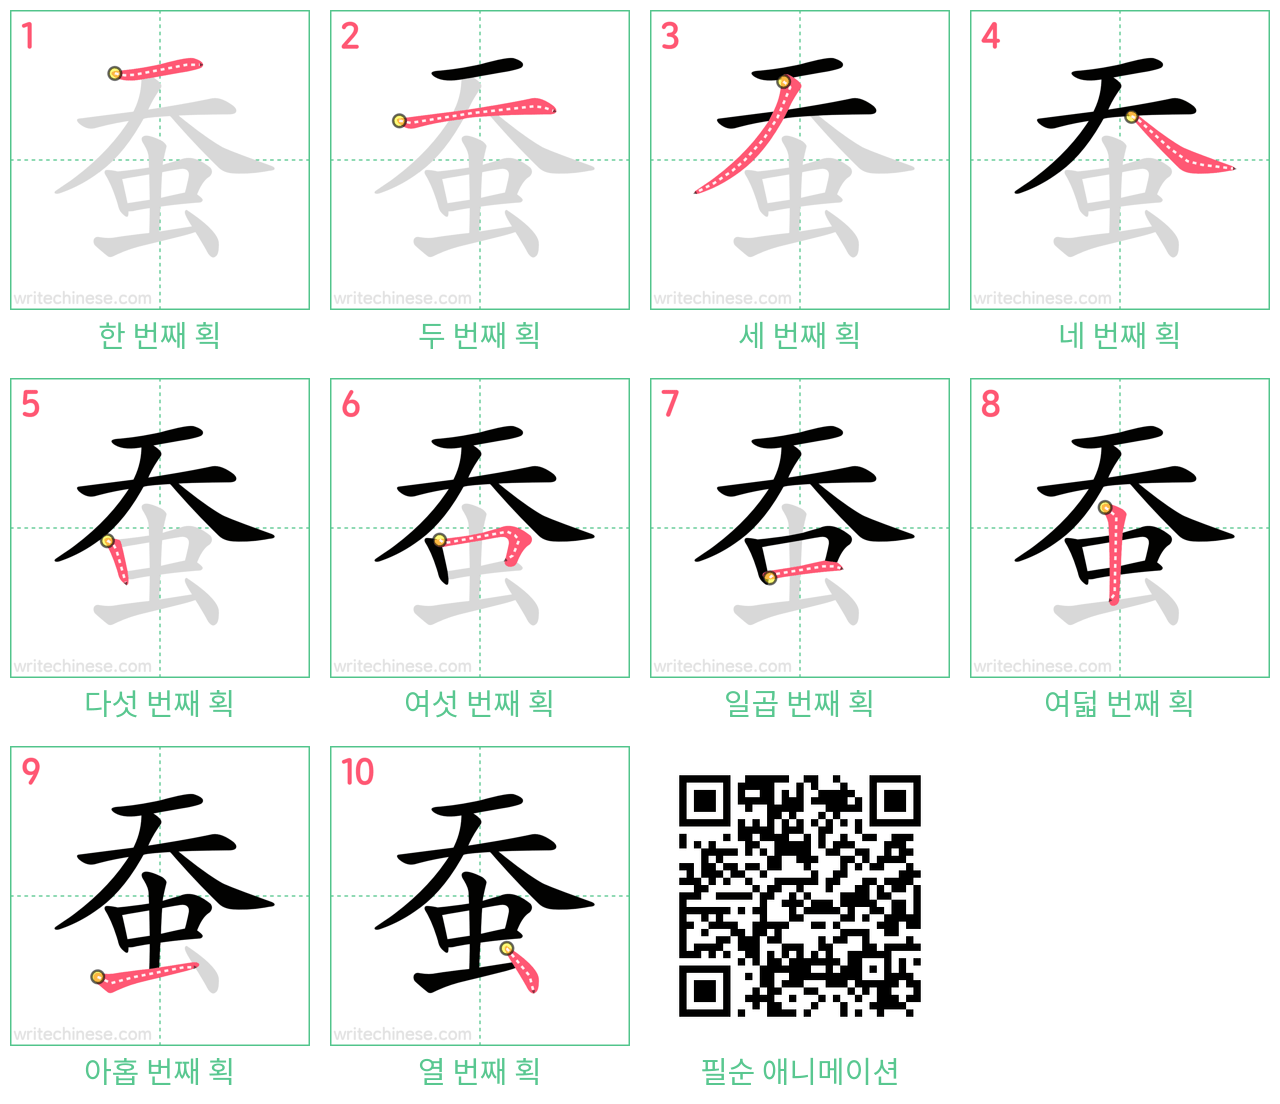 蚕 step-by-step stroke order diagrams